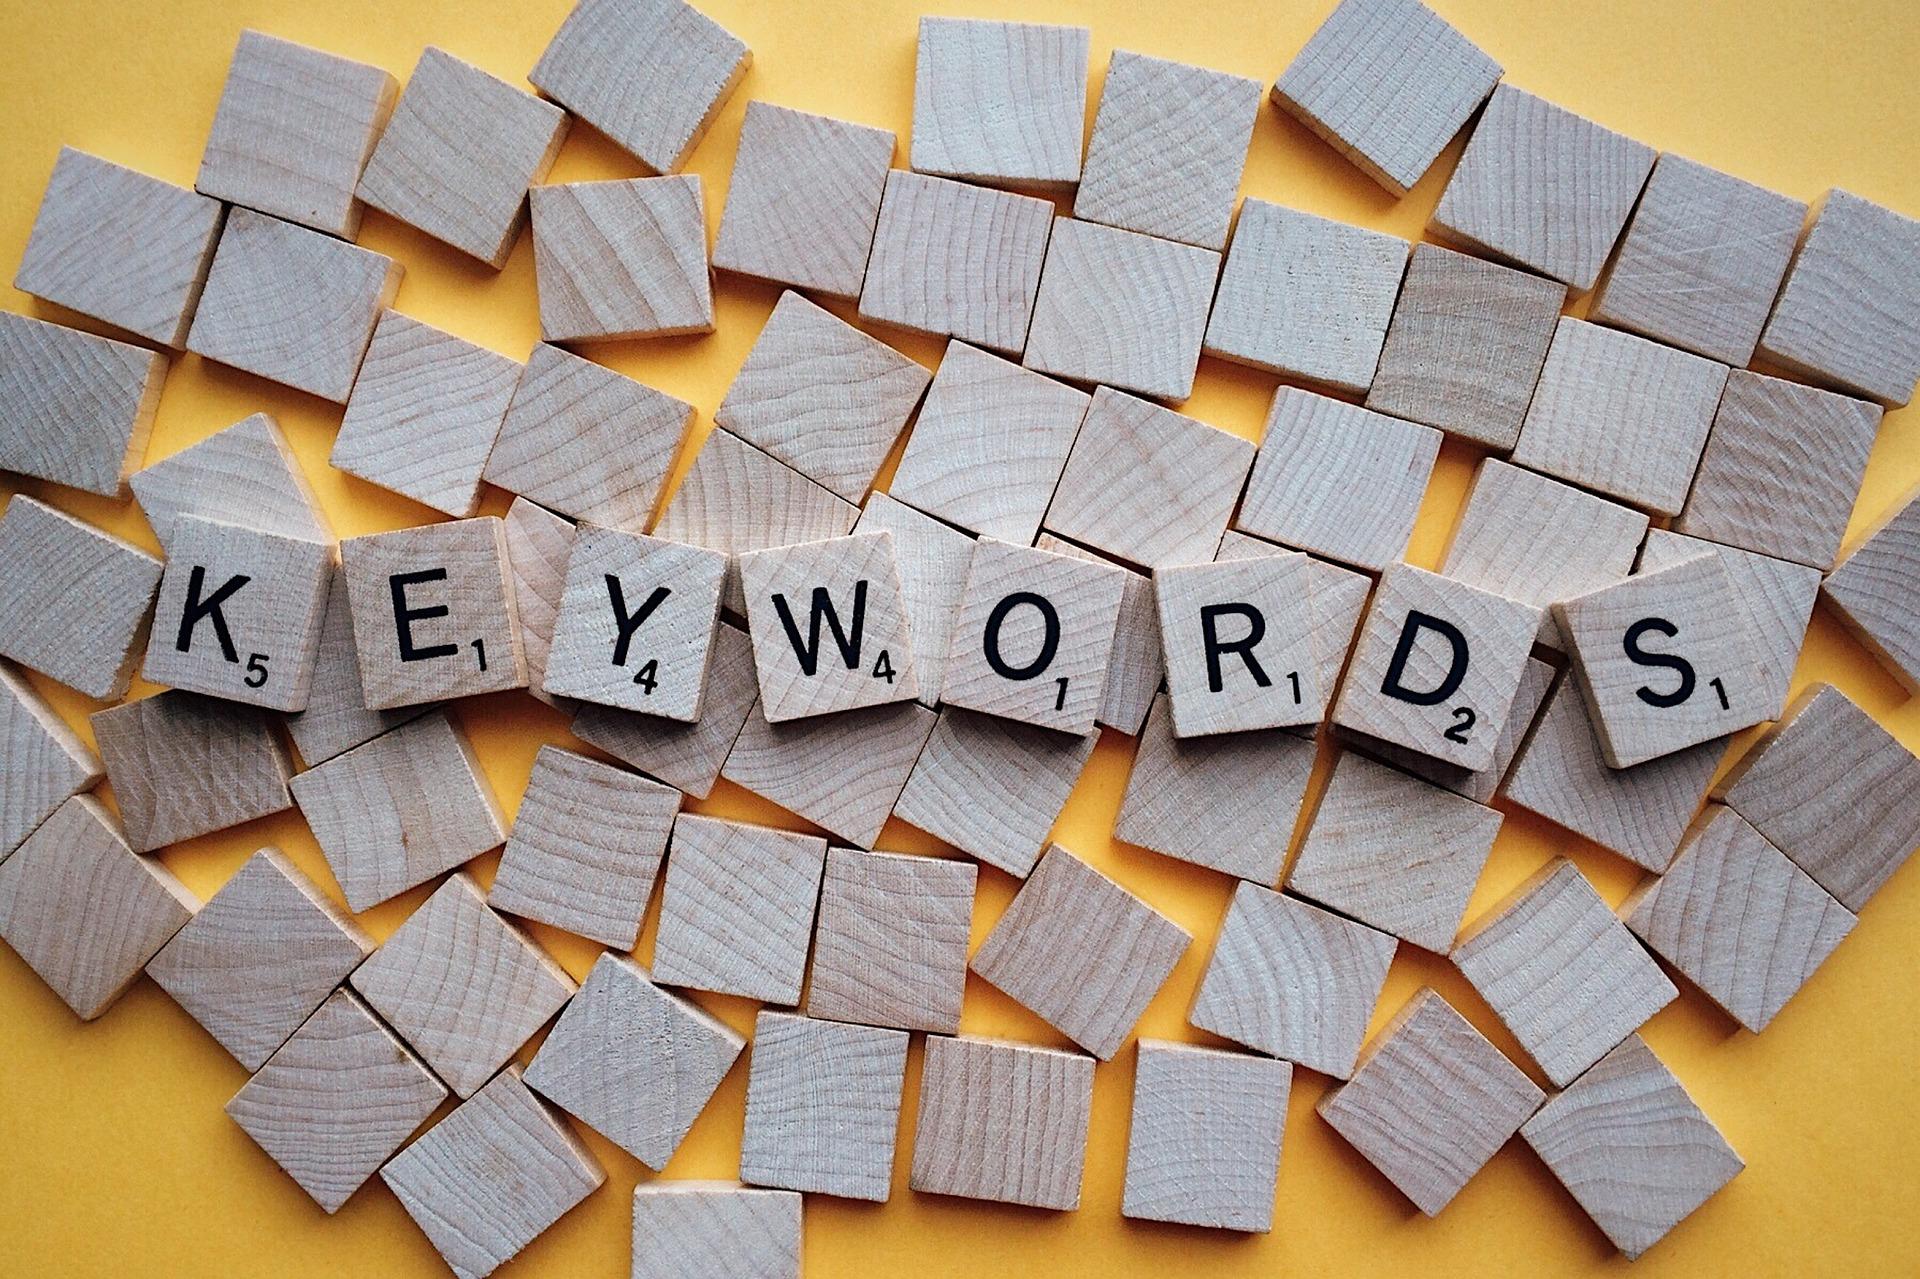 Das Wort "Keywords" ist mit einzelnen Buchstaben-Steinen eines Spiels zusammengesetzt. Das Wort liegt auf mehreren anderen umgedrehten Spielsteinen auf einem orangefarbenem Untergrund. Mit den richtigen Keywords wird SEO für deinen Onlineshop zum Klacks.